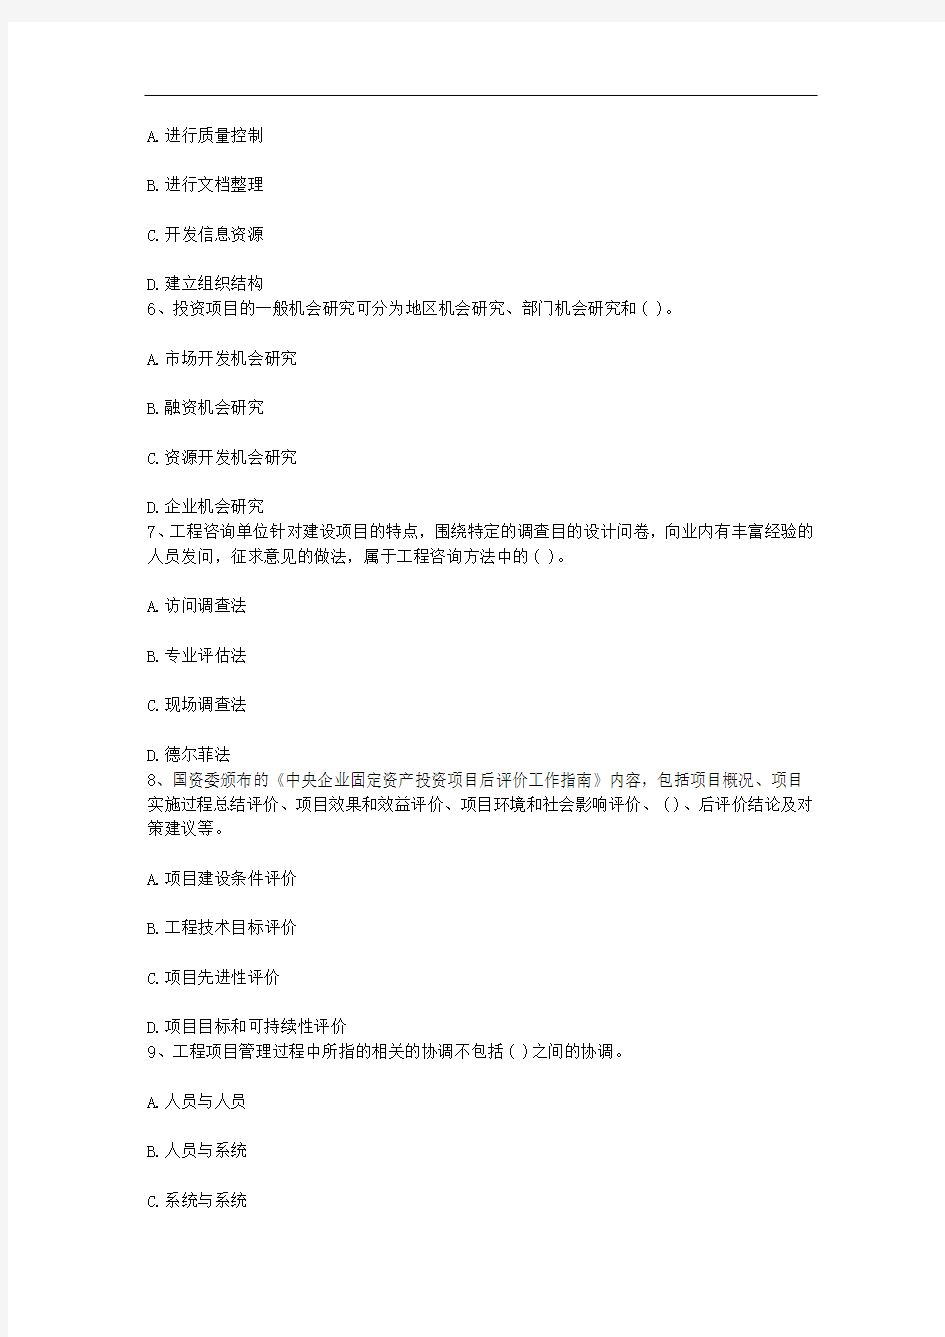 黑龙江省咨询工程师考试《政策与规划》练习题每日一讲(11月5日)